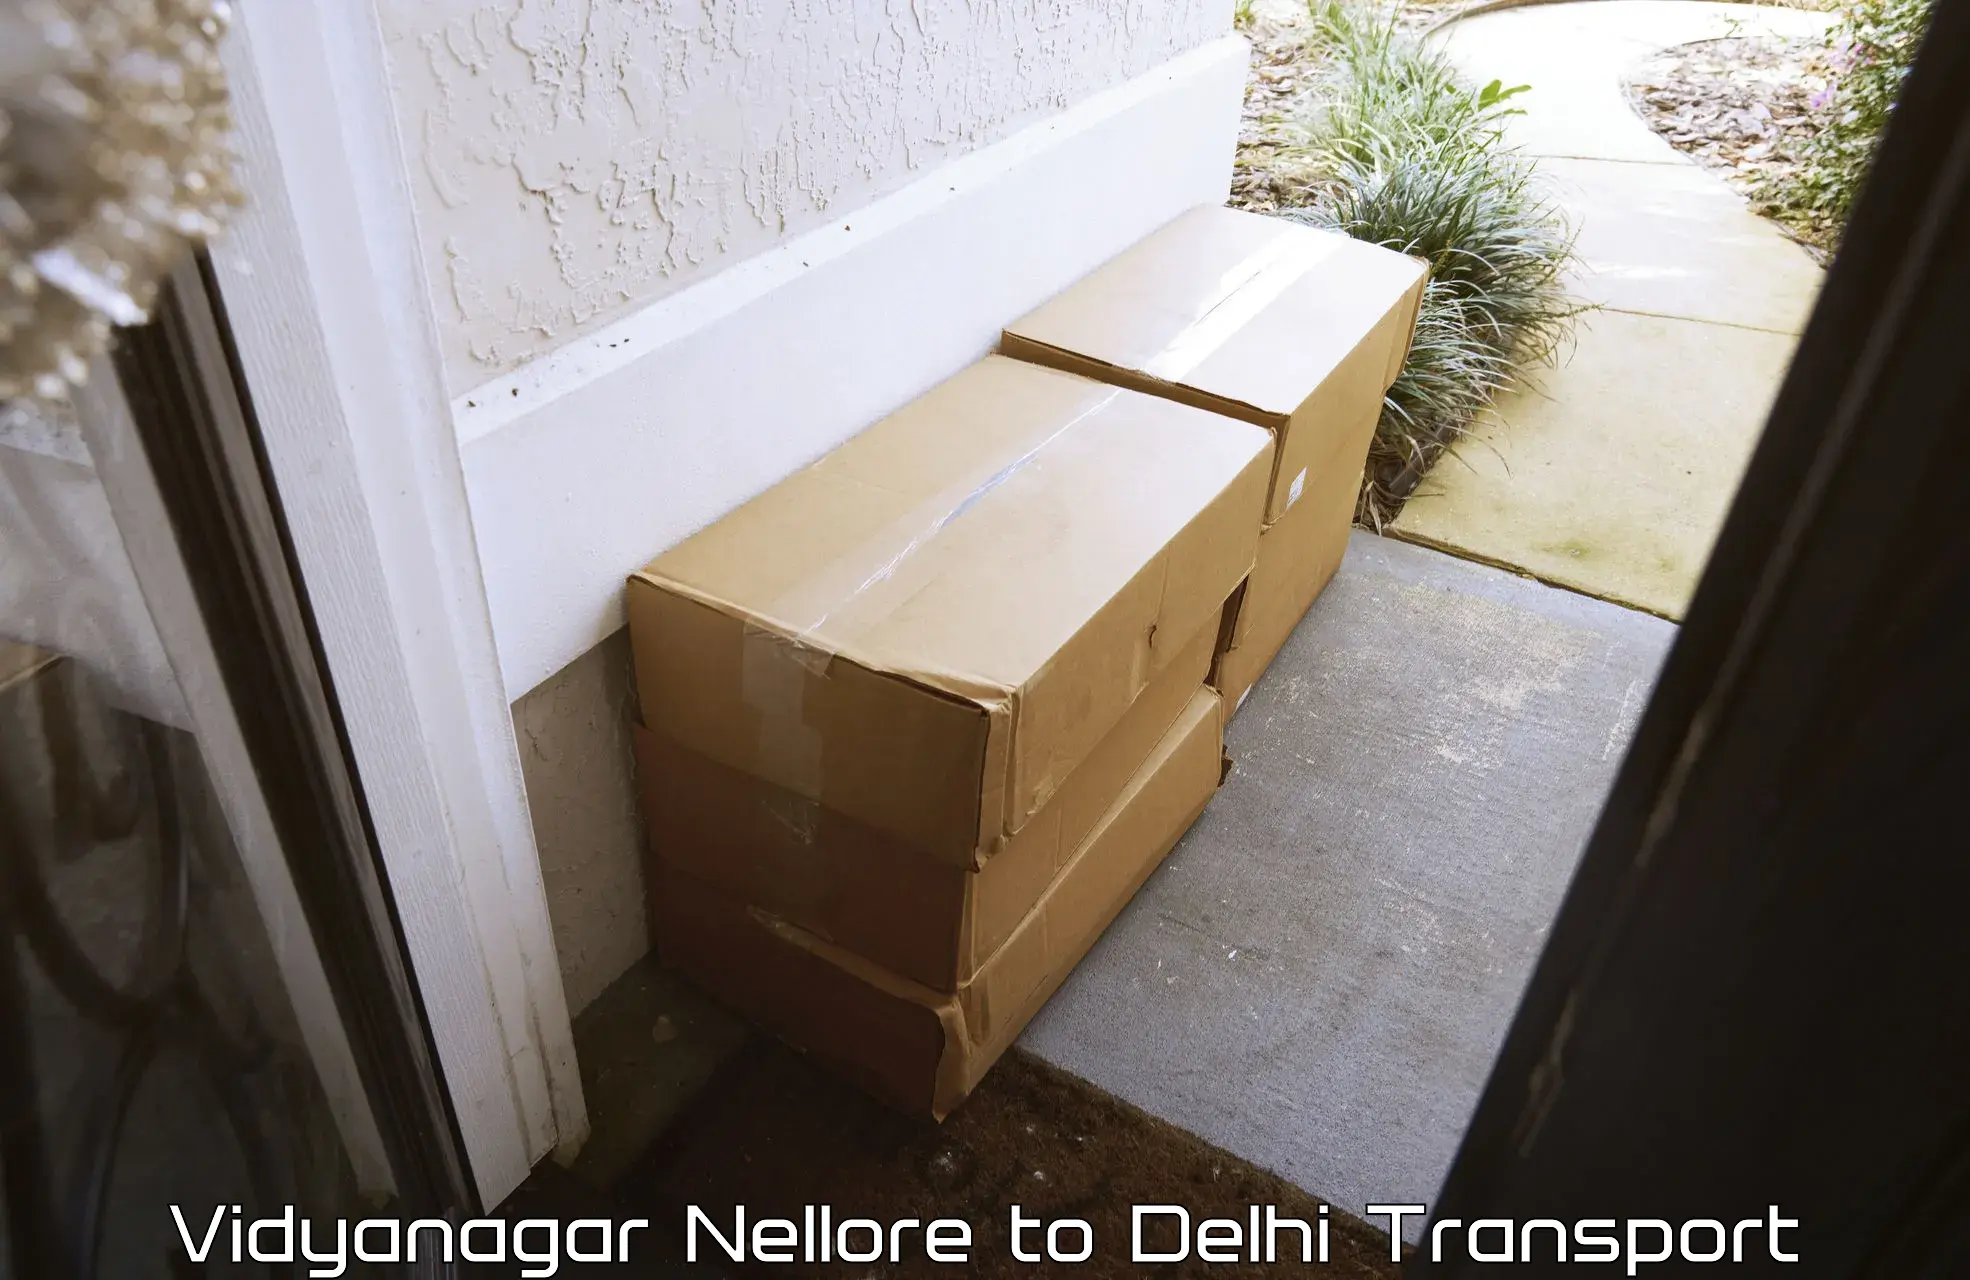 Transport shared services in Vidyanagar Nellore to Jamia Millia Islamia New Delhi